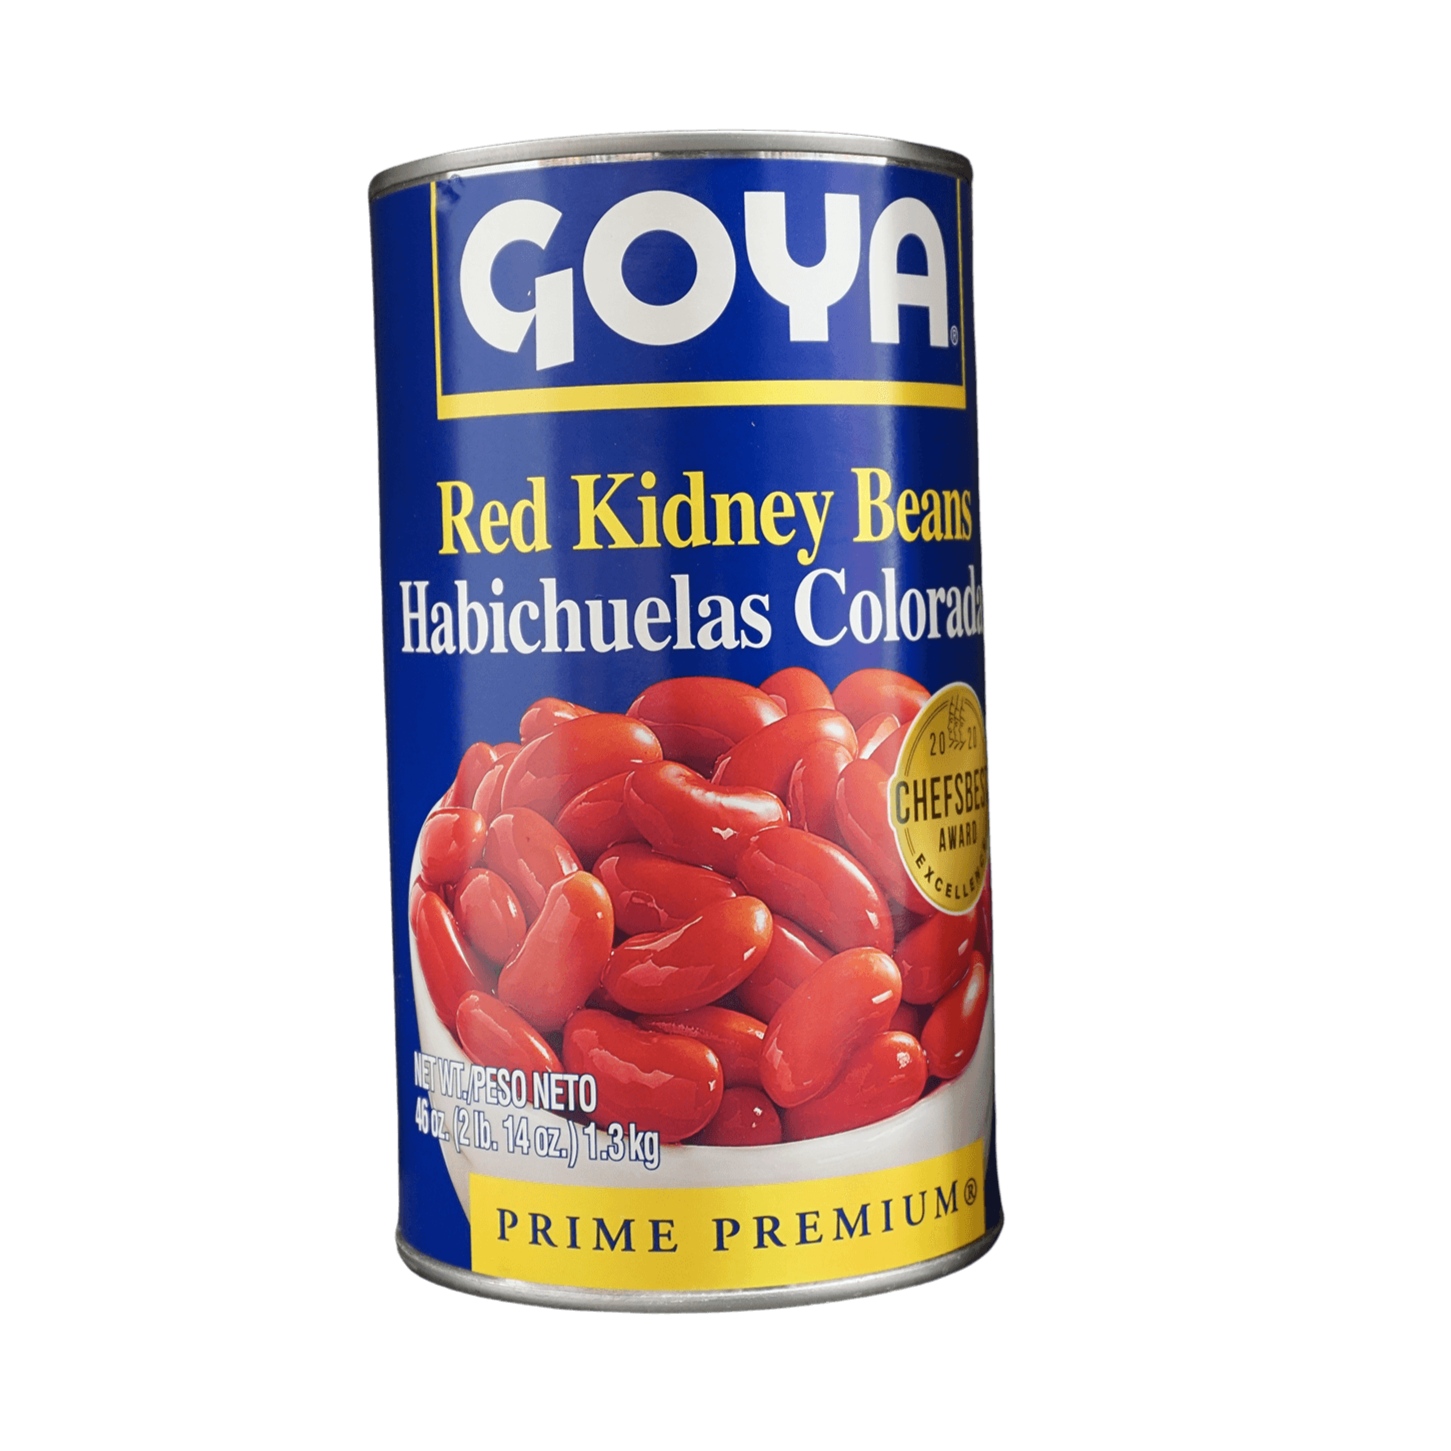 opdragelse krigerisk kande Goya Red Kidney Beans, 2lb | Jaldi